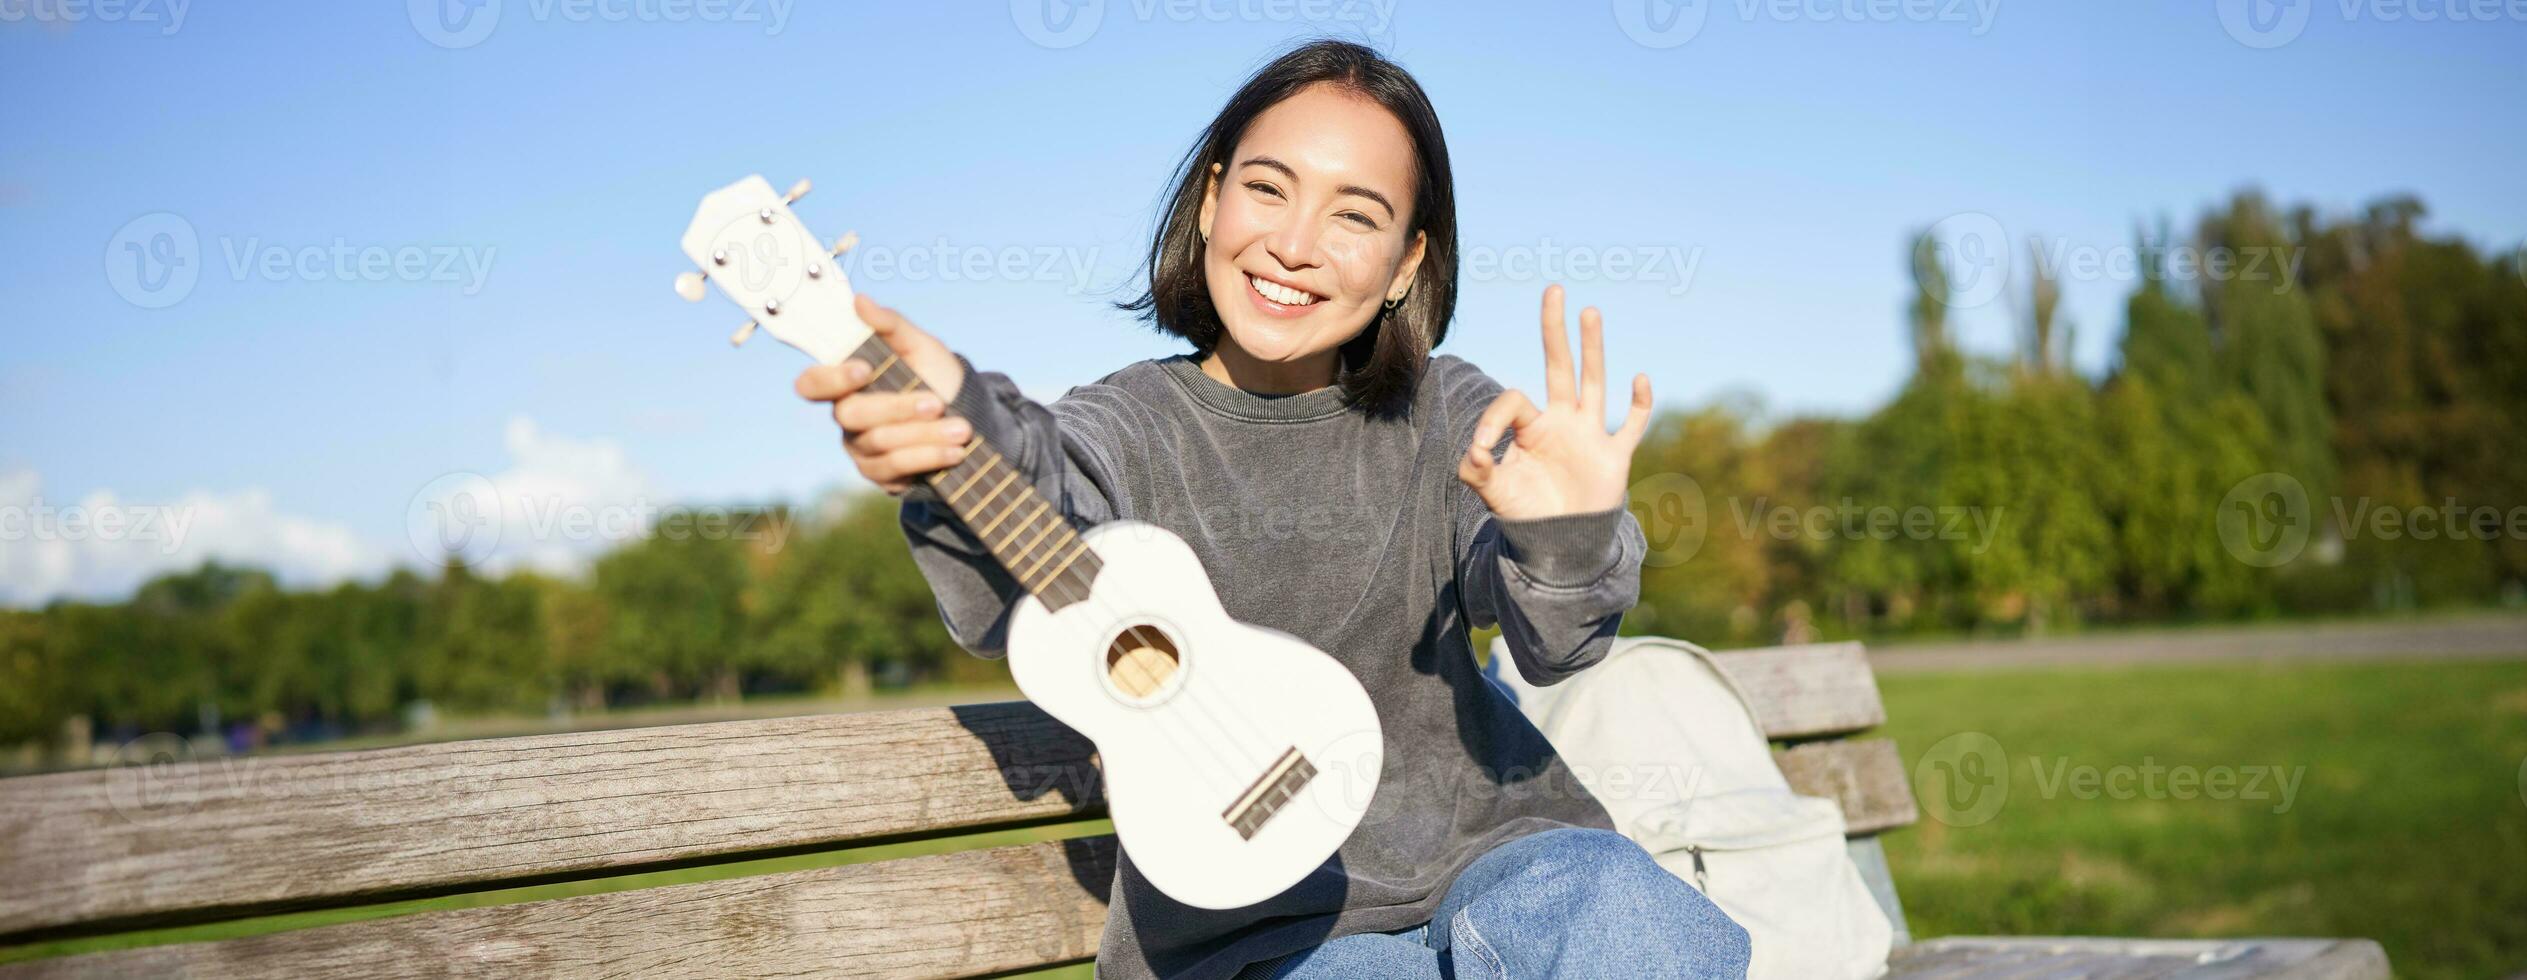 linda sonriente niña muestra Okay firmar y su nuevo ukelele, se sienta en banco en parque, recomienda musical instrumento foto